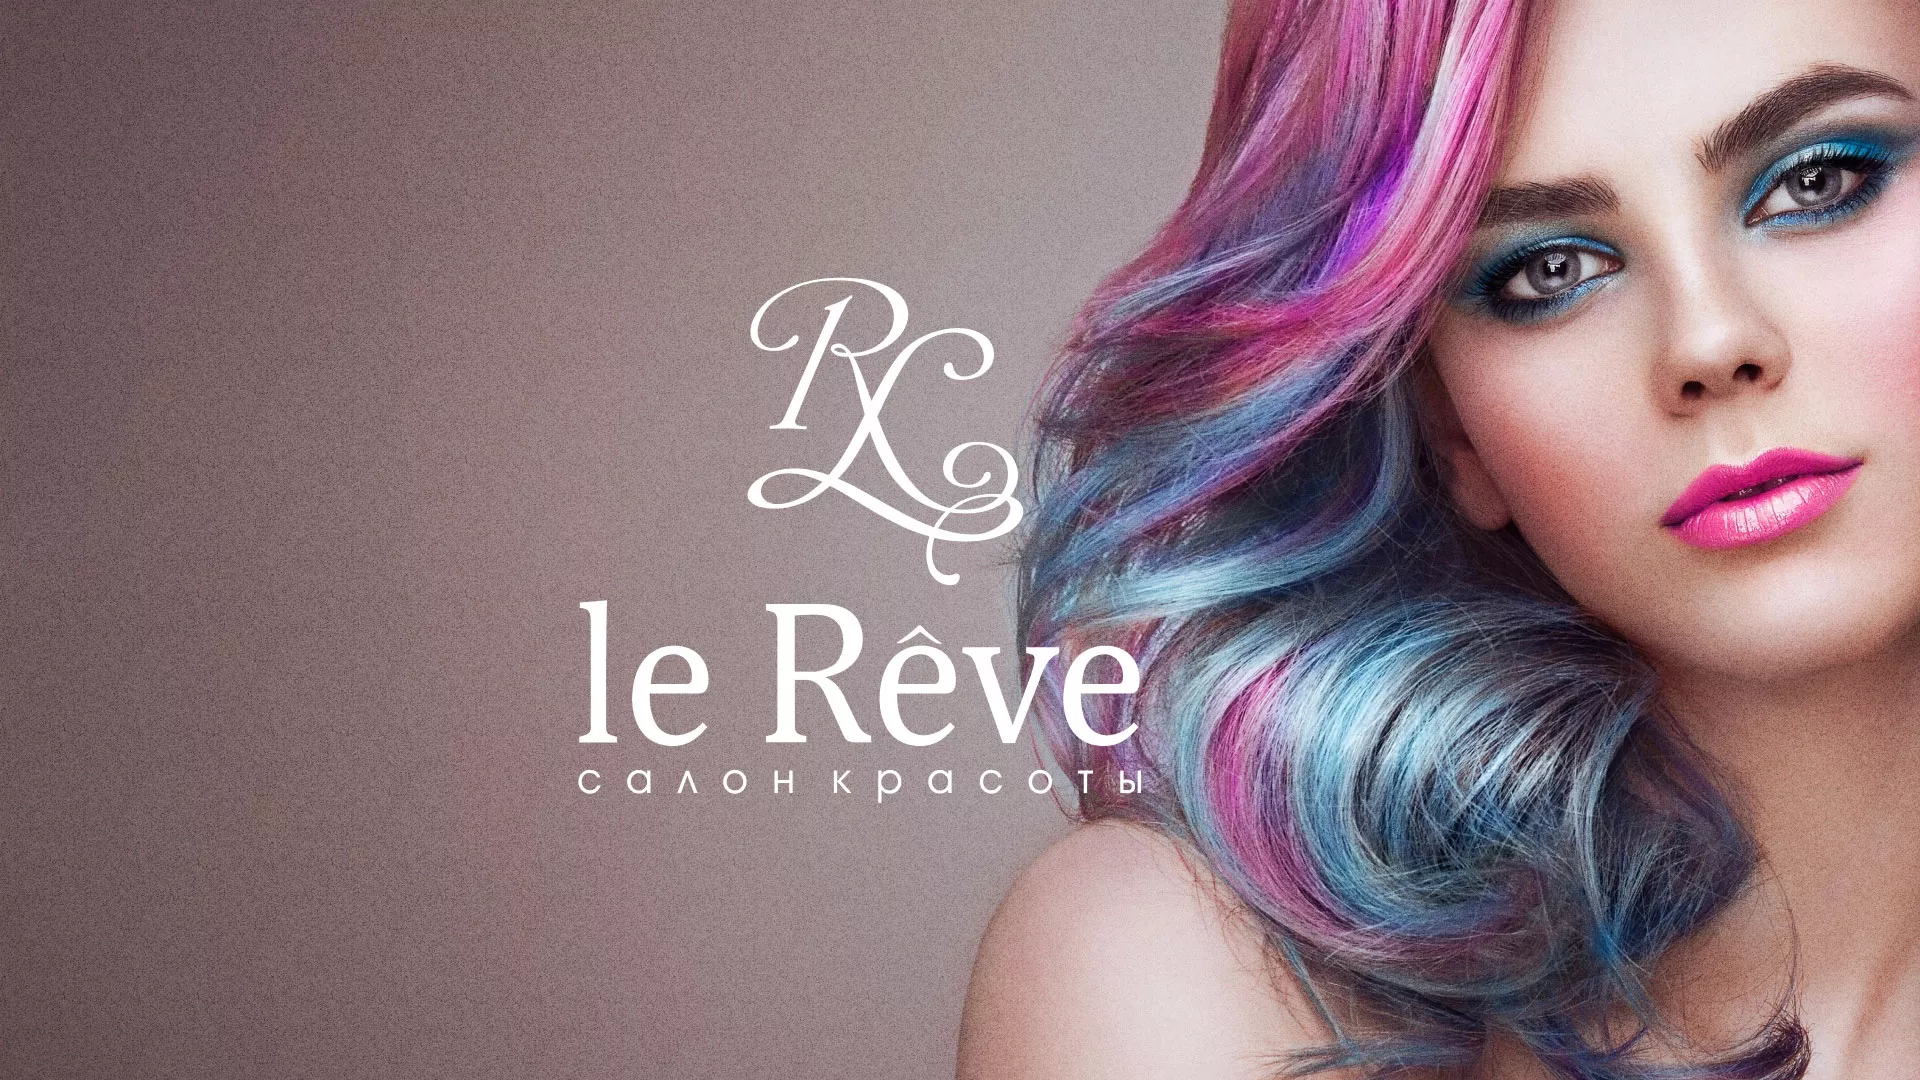 Создание сайта для салона красоты «Le Reve» в Ишимбае